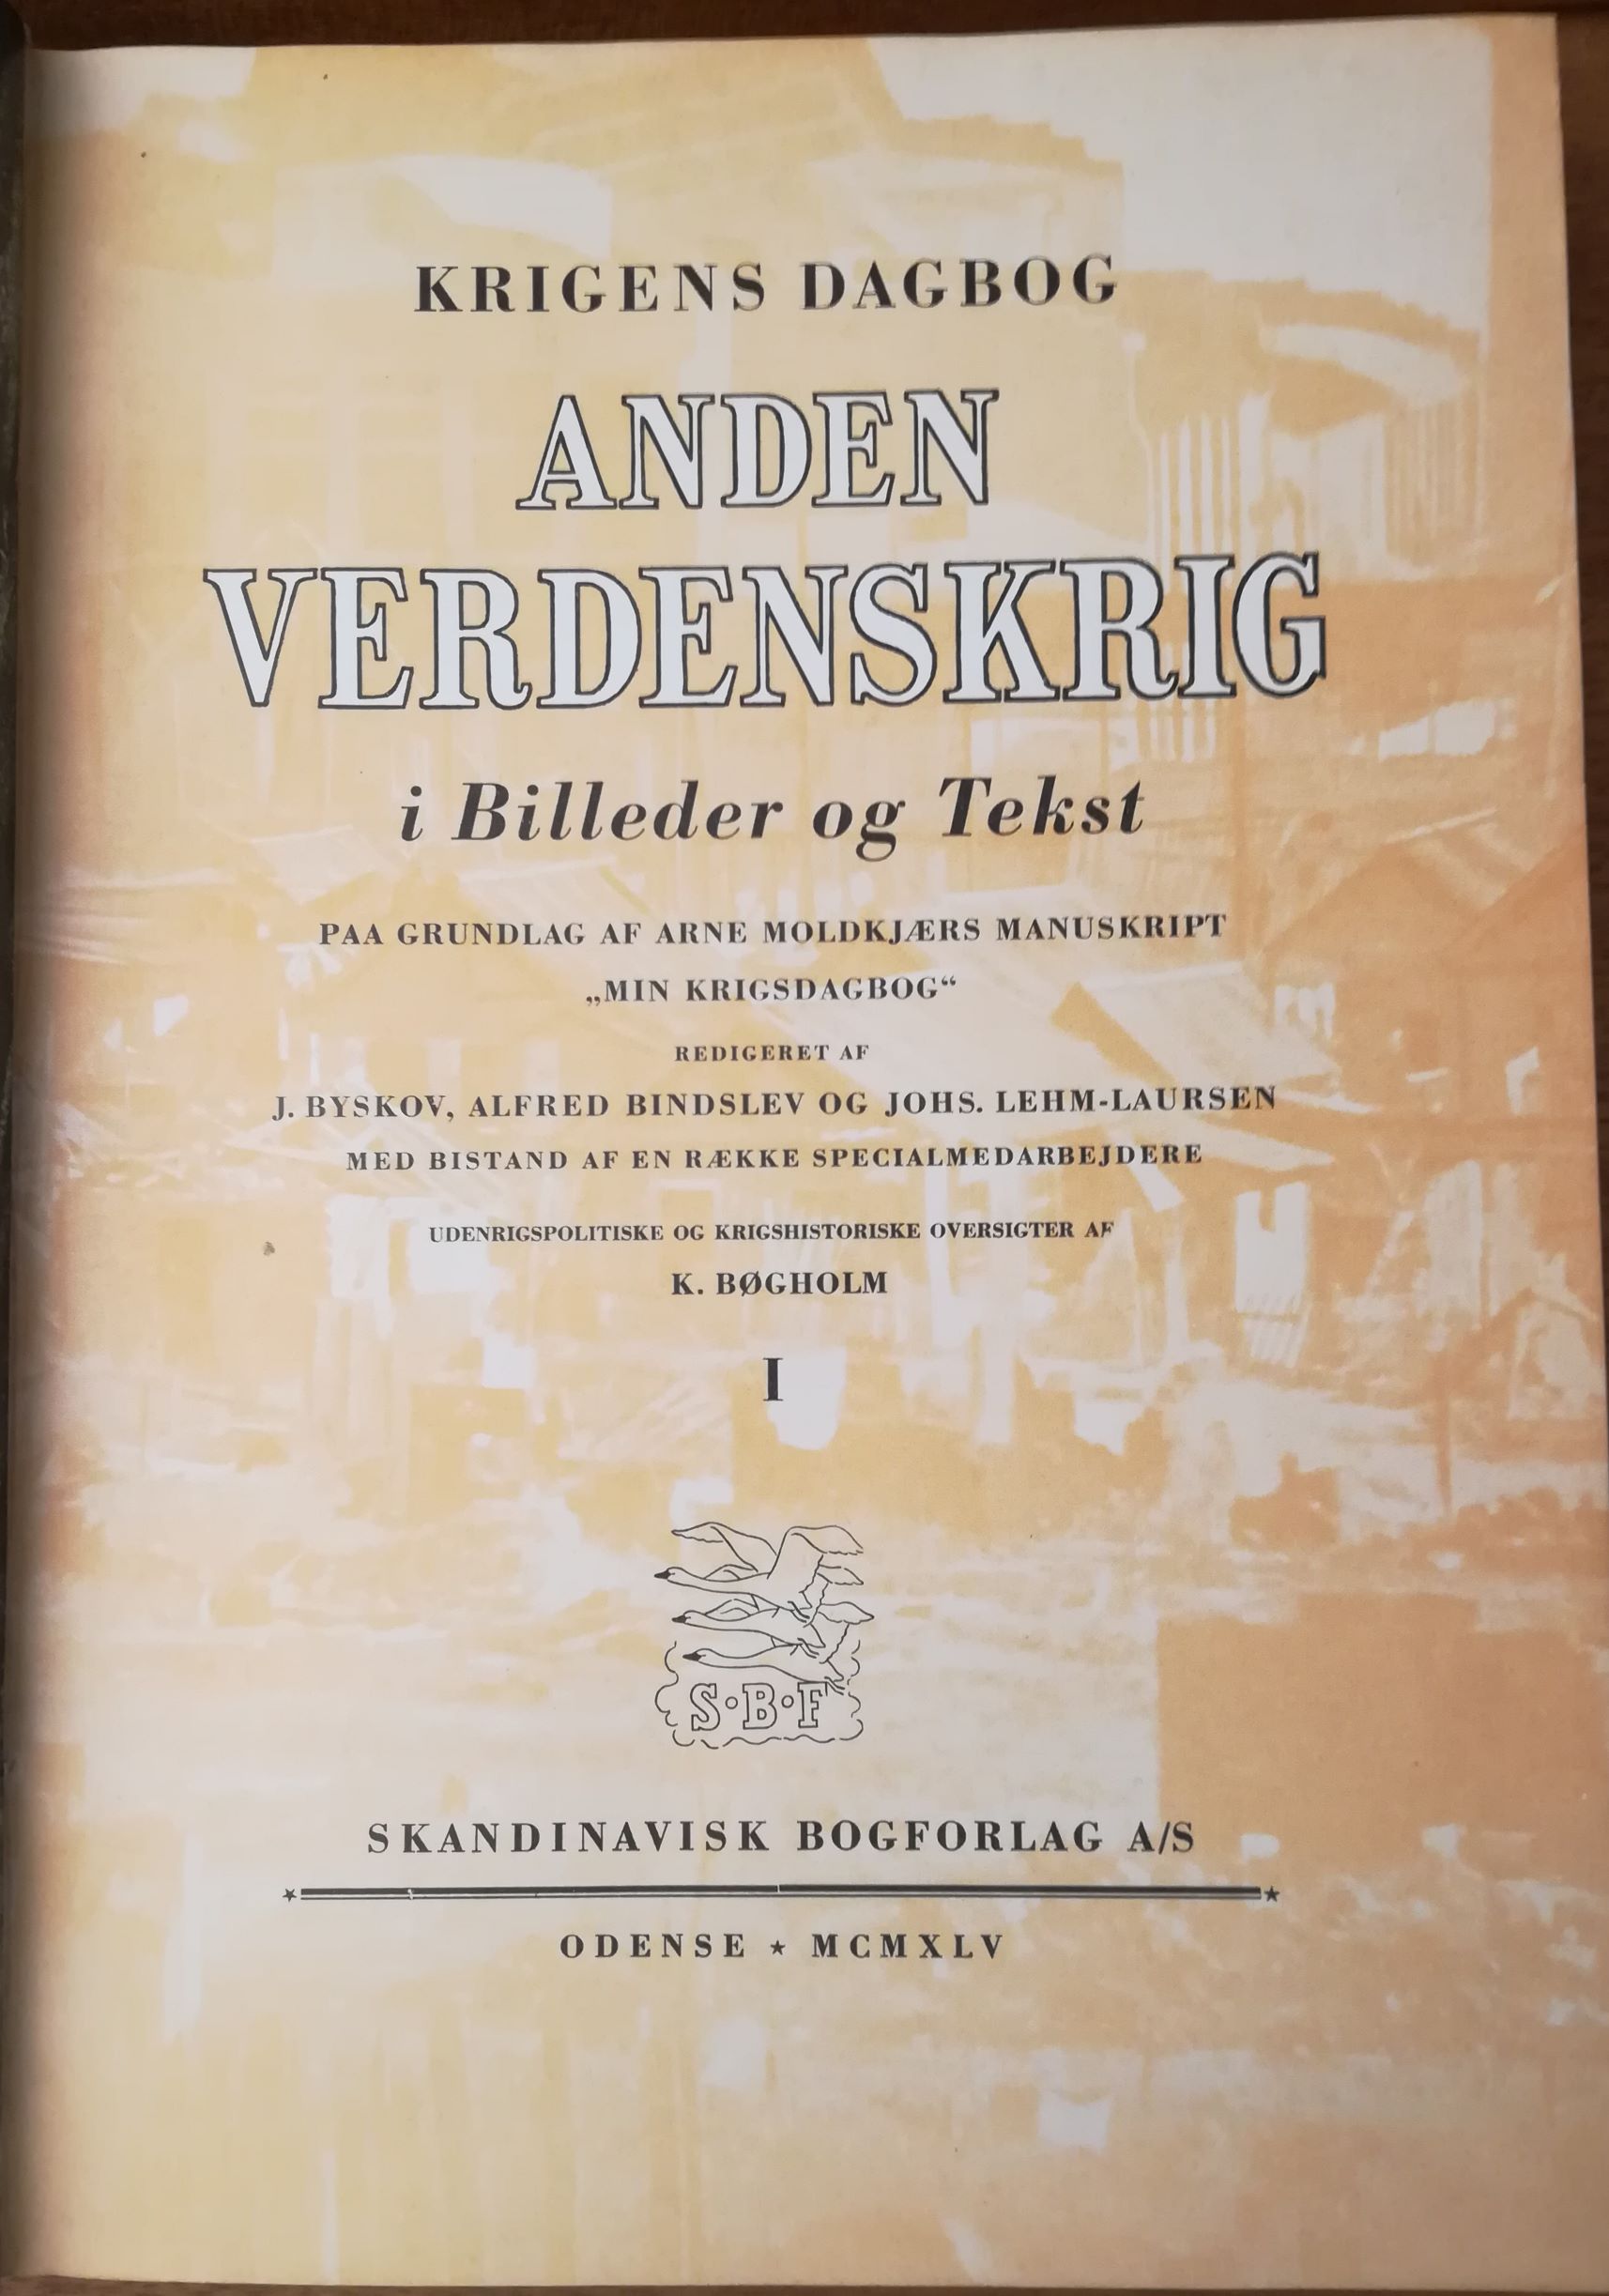 Krigens Dagbog: Anden Verdenskrig i Billeder og Tekst: Paa af Arne Moldkjærs "Min Krigsdagbog", 3 bind - Nyt-Brugt-Smukt